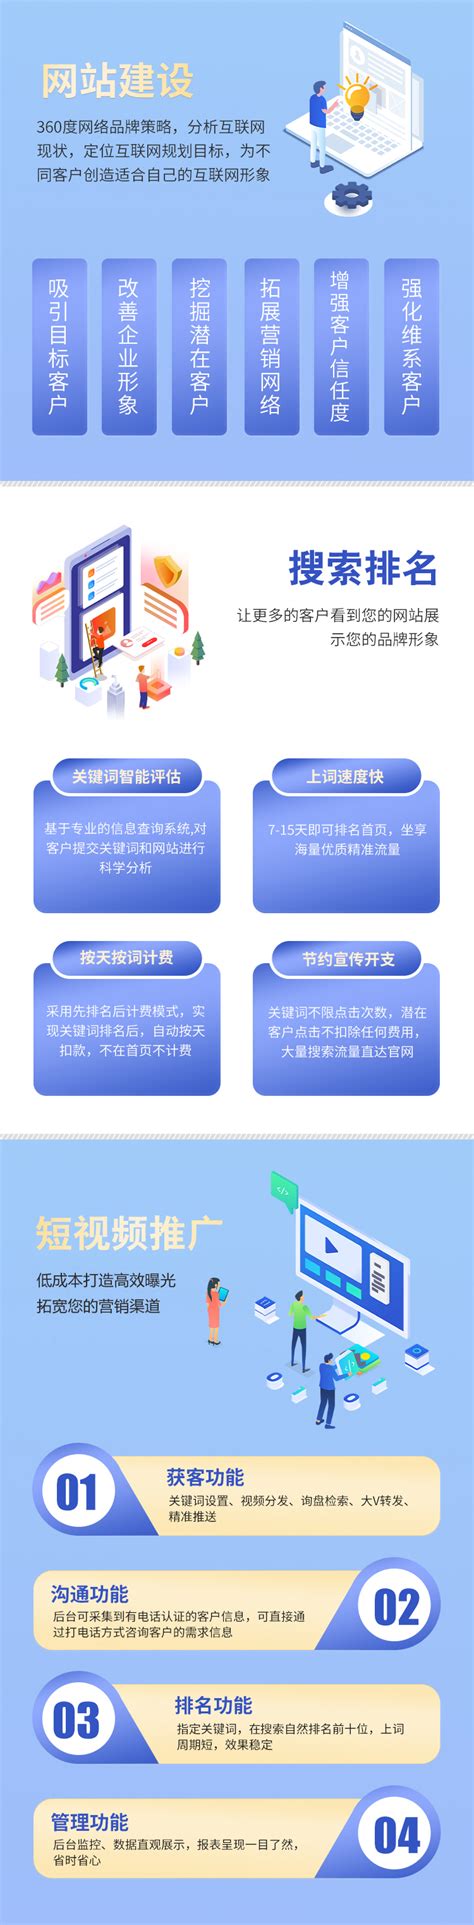 贵州网站网络推广模式